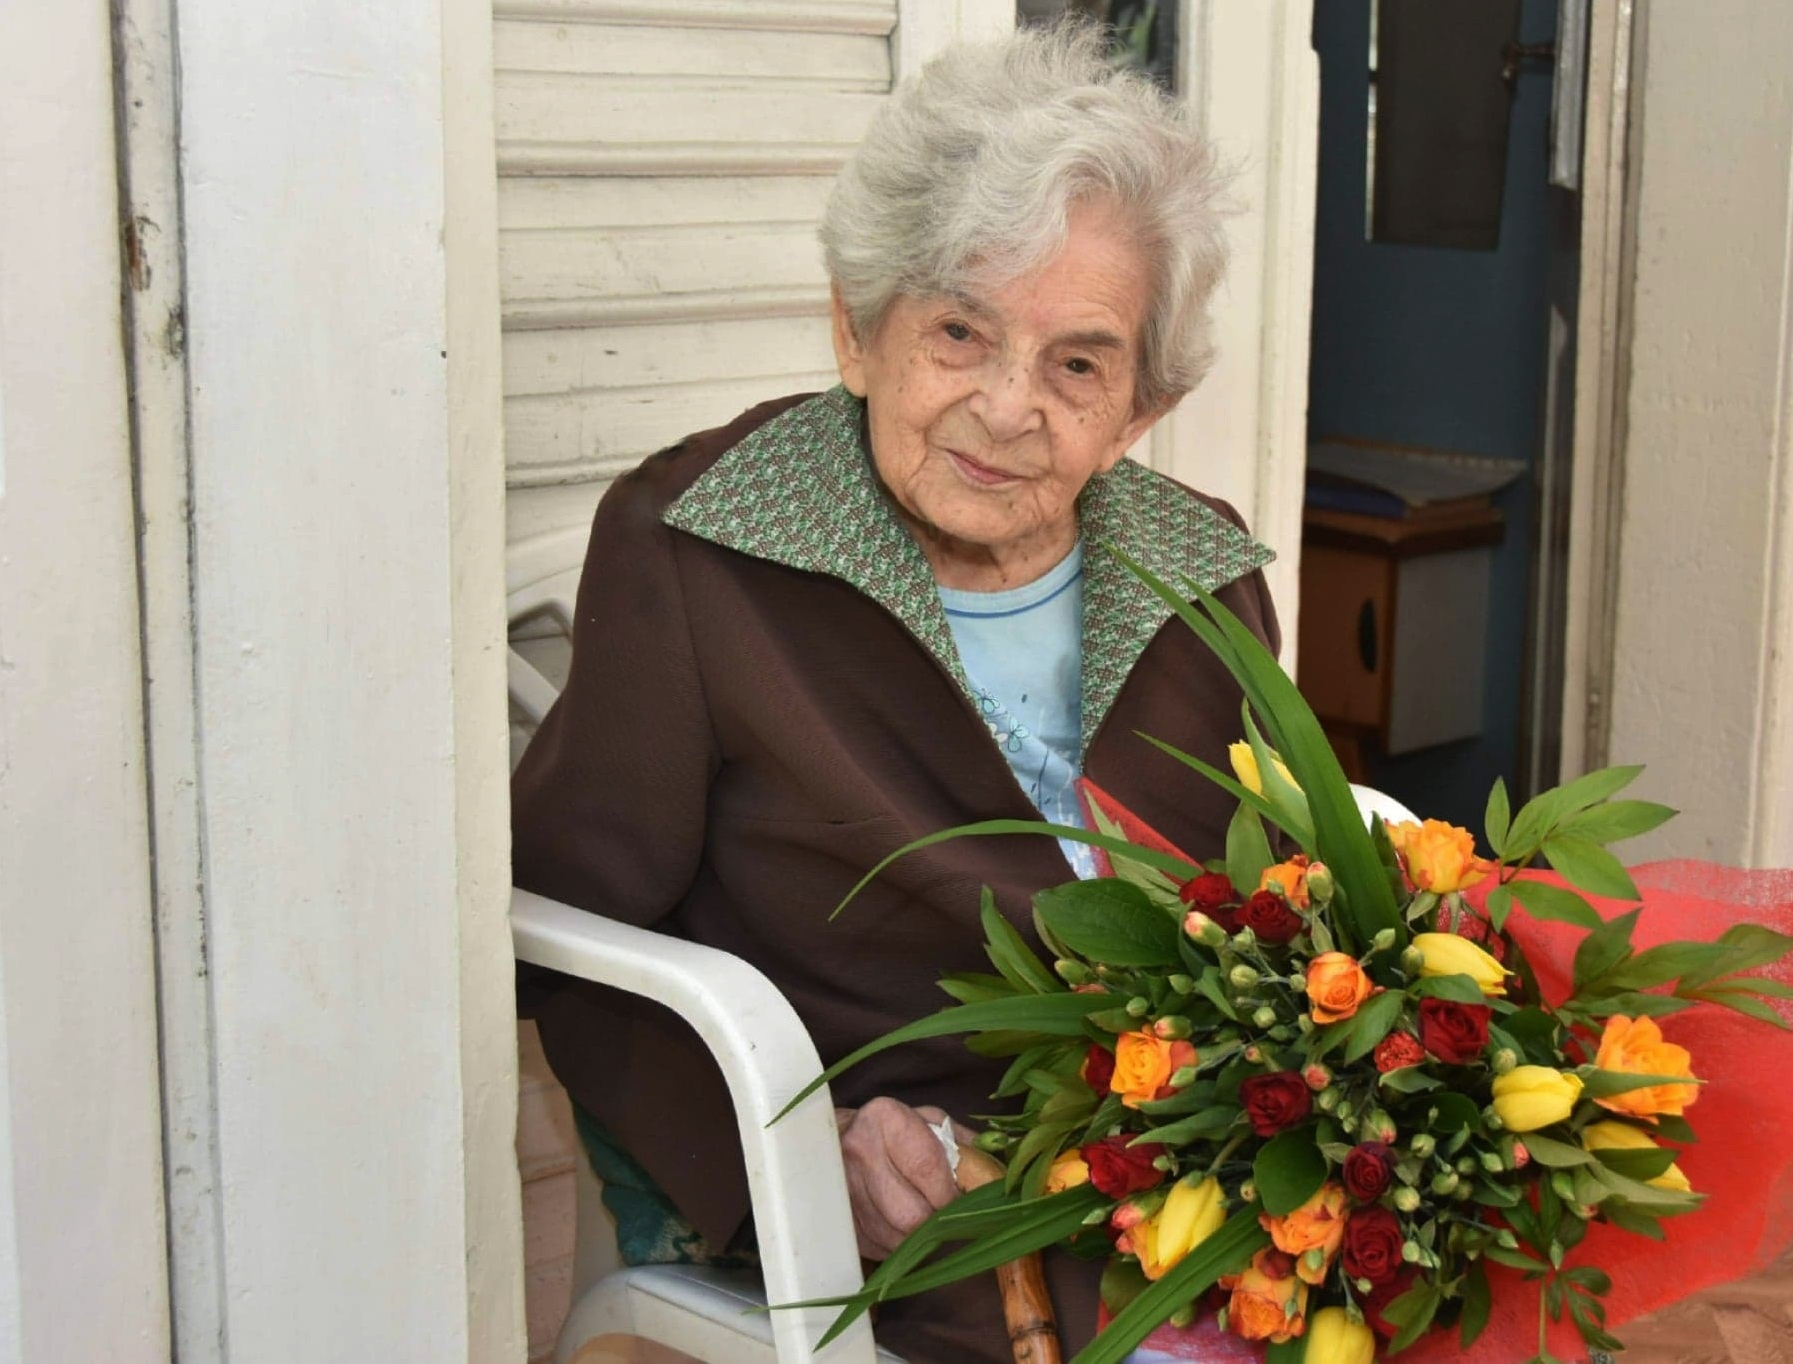 Starsza kobieta siedzi na białym krześle, w rękach trzyma bukiet kolorowych kwiatów.